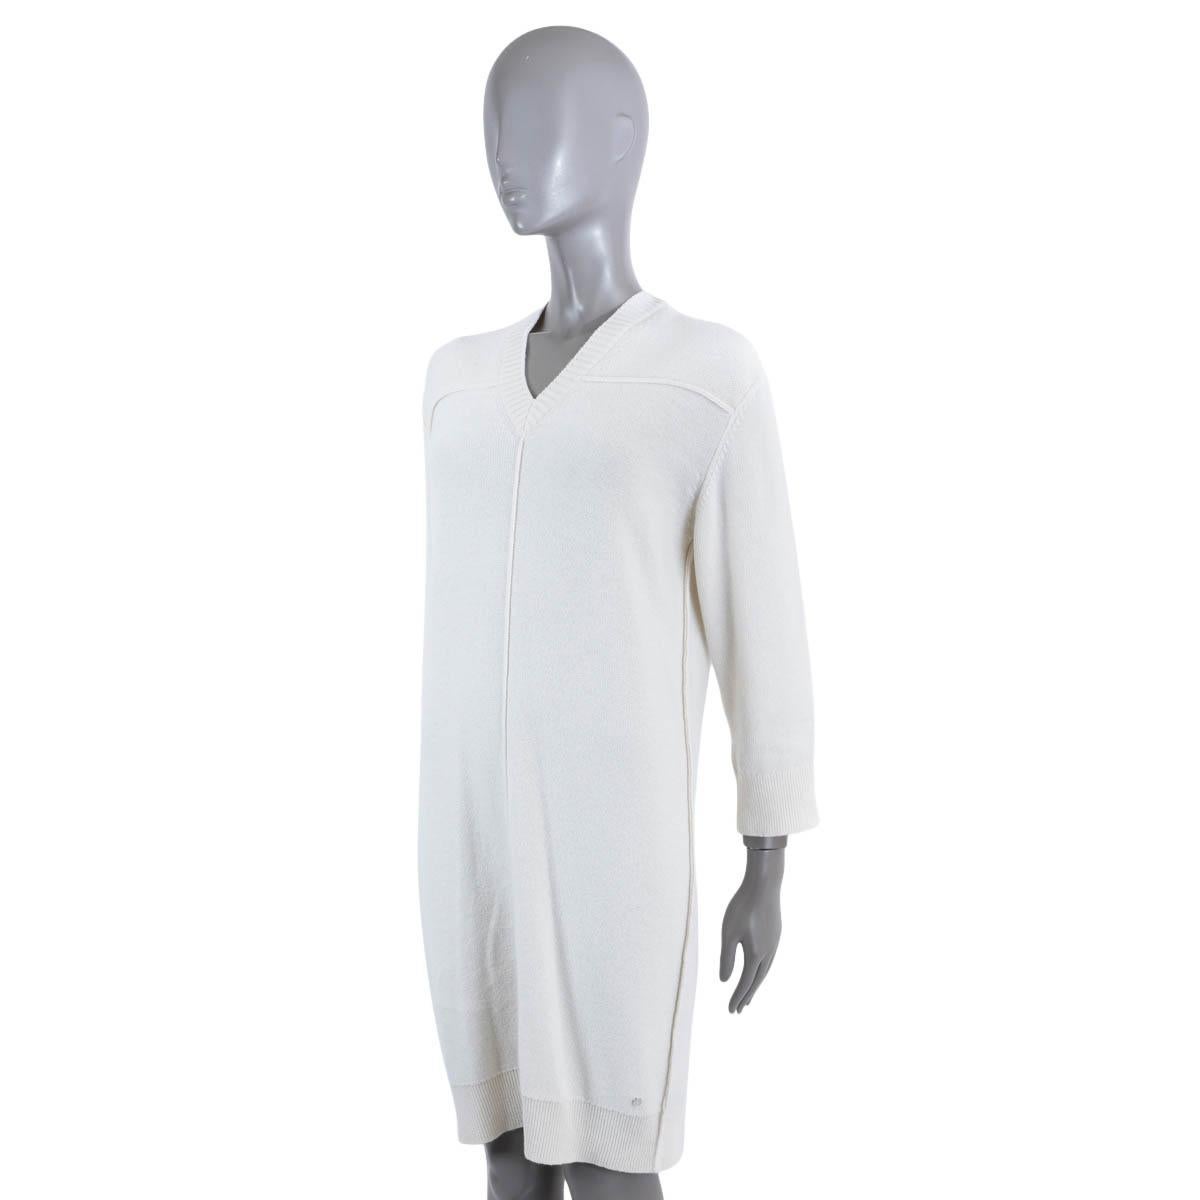 Gray HERMES white cashmere V-NECK KNIT Dress 38 S